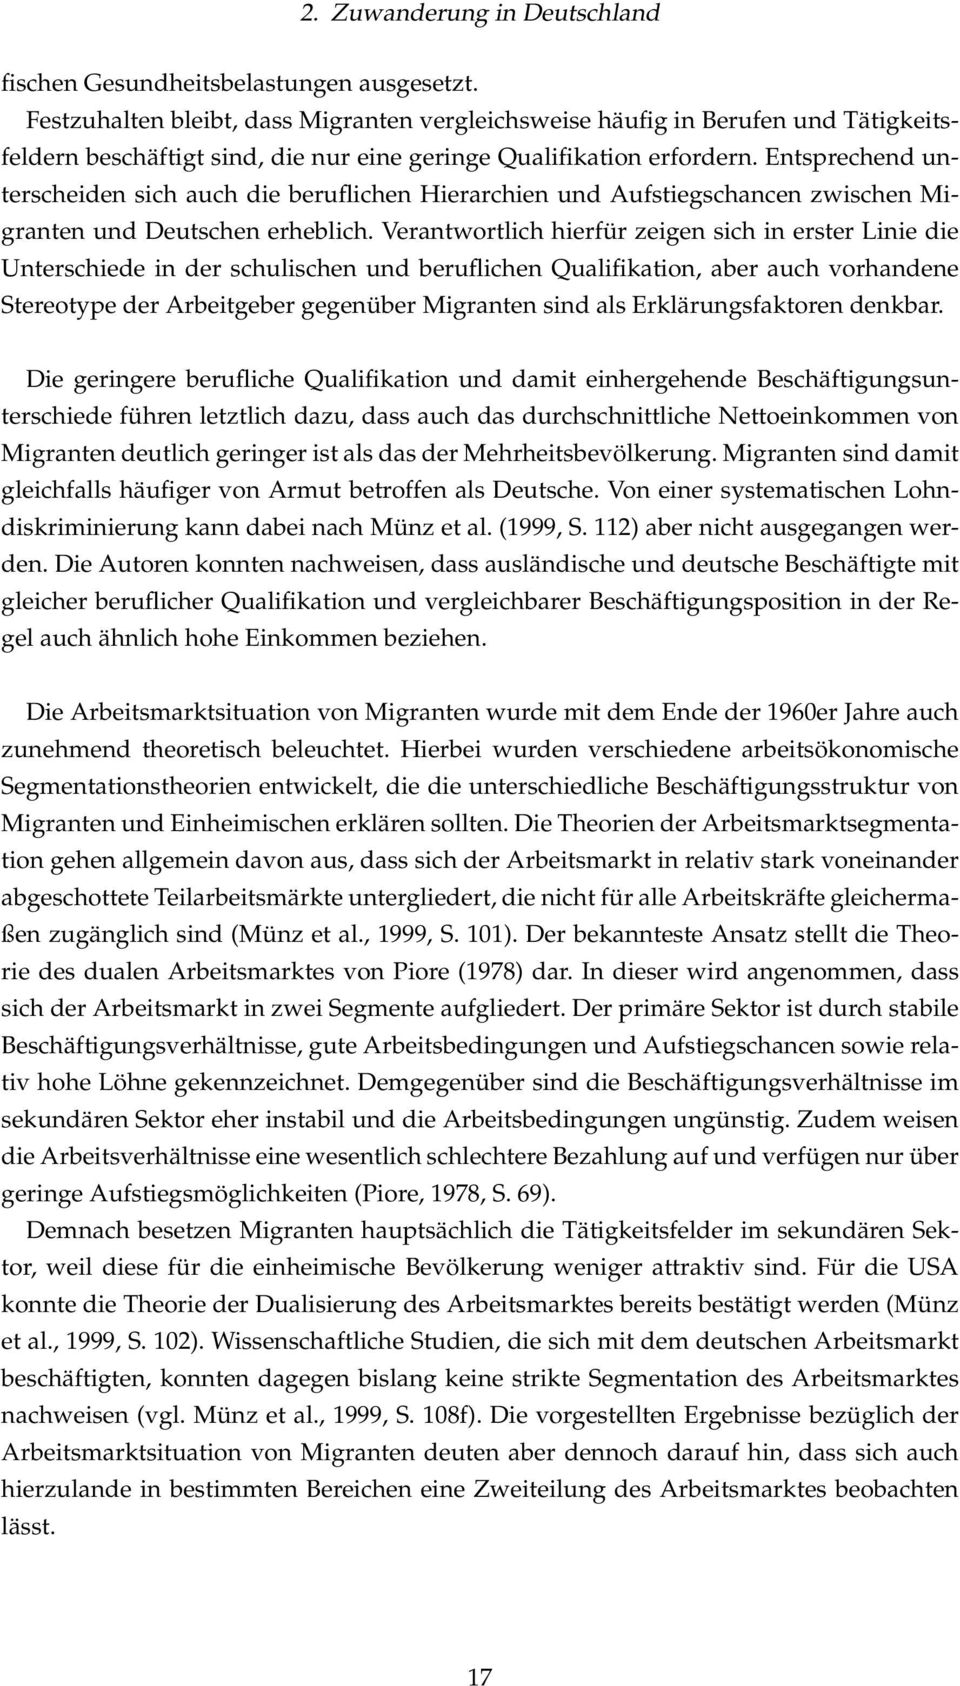 Entsprechend unterscheiden sich auch die beruflichen Hierarchien und Aufstiegschancen zwischen Migranten und Deutschen erheblich.